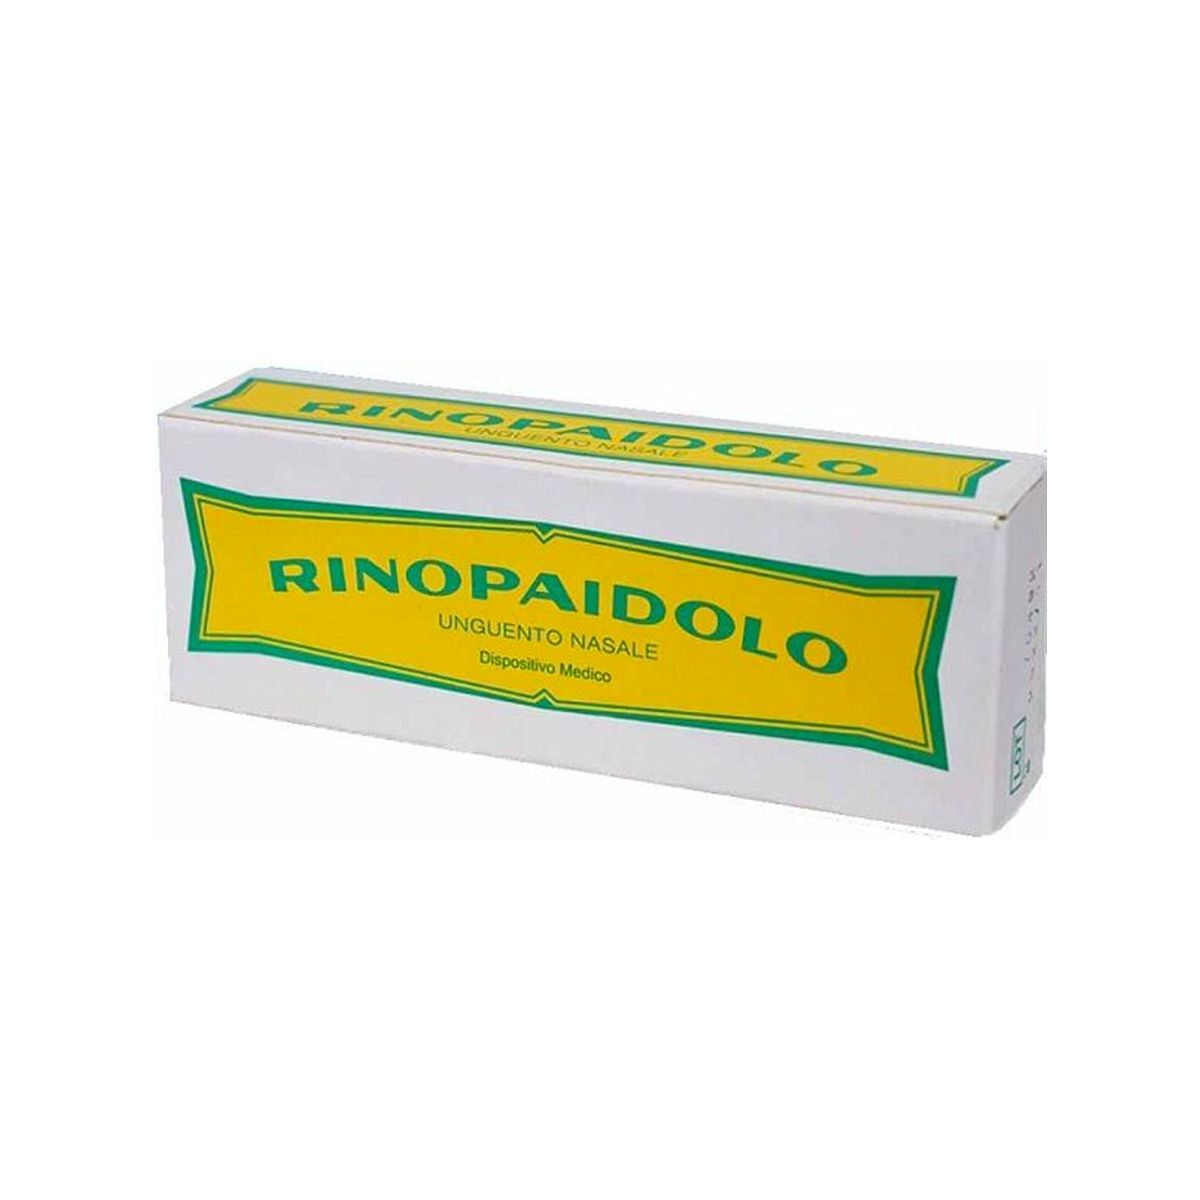 deca laboratorio chimico rinopaidolo unguento nasale 10g